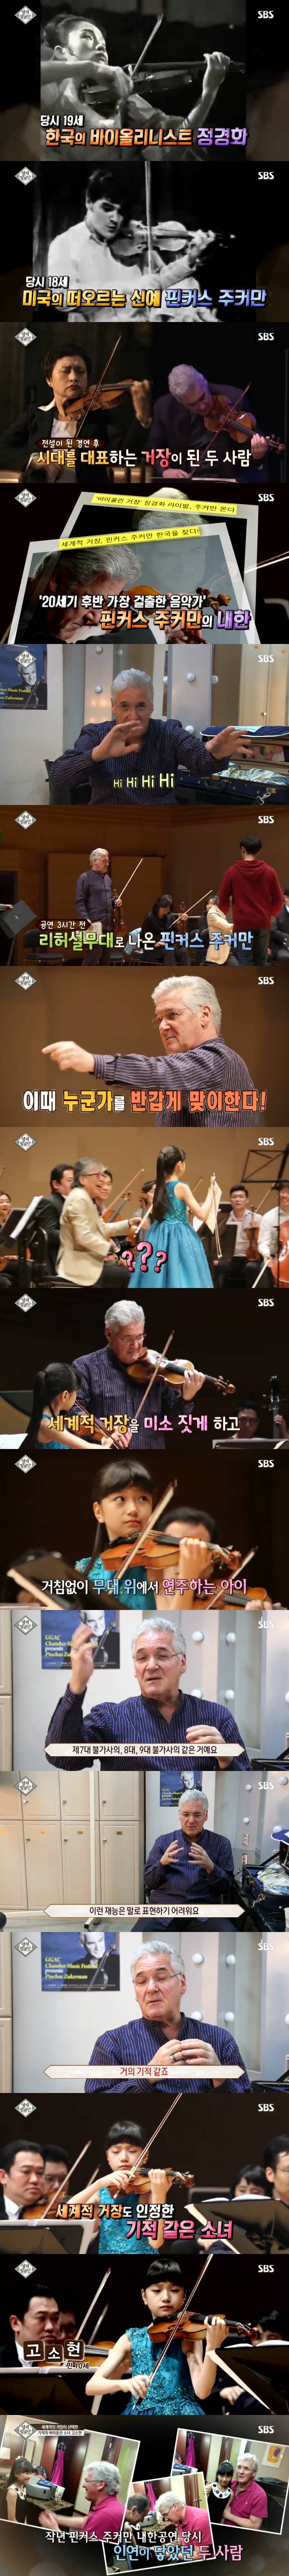 영재발굴단 모차르트의 환생이라 불리는 11살 천재 바이올리니스트 고소현 + 근황, 연주 유튜브 | 인스티즈